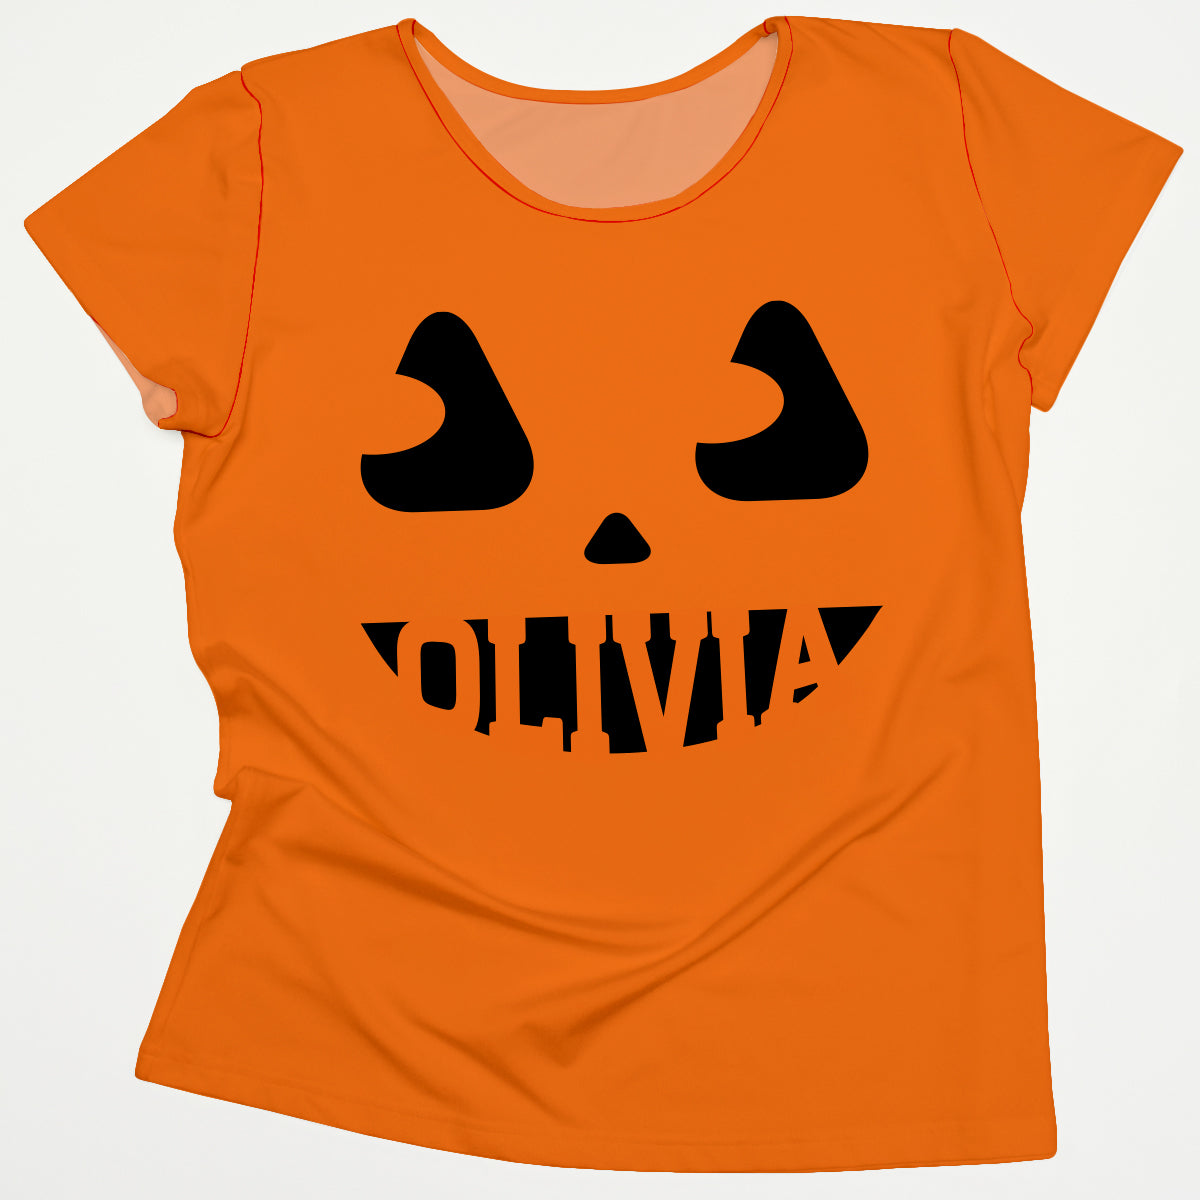 Jack O Lantern Personalized Name Orange Short Sleeve Tee Shirt